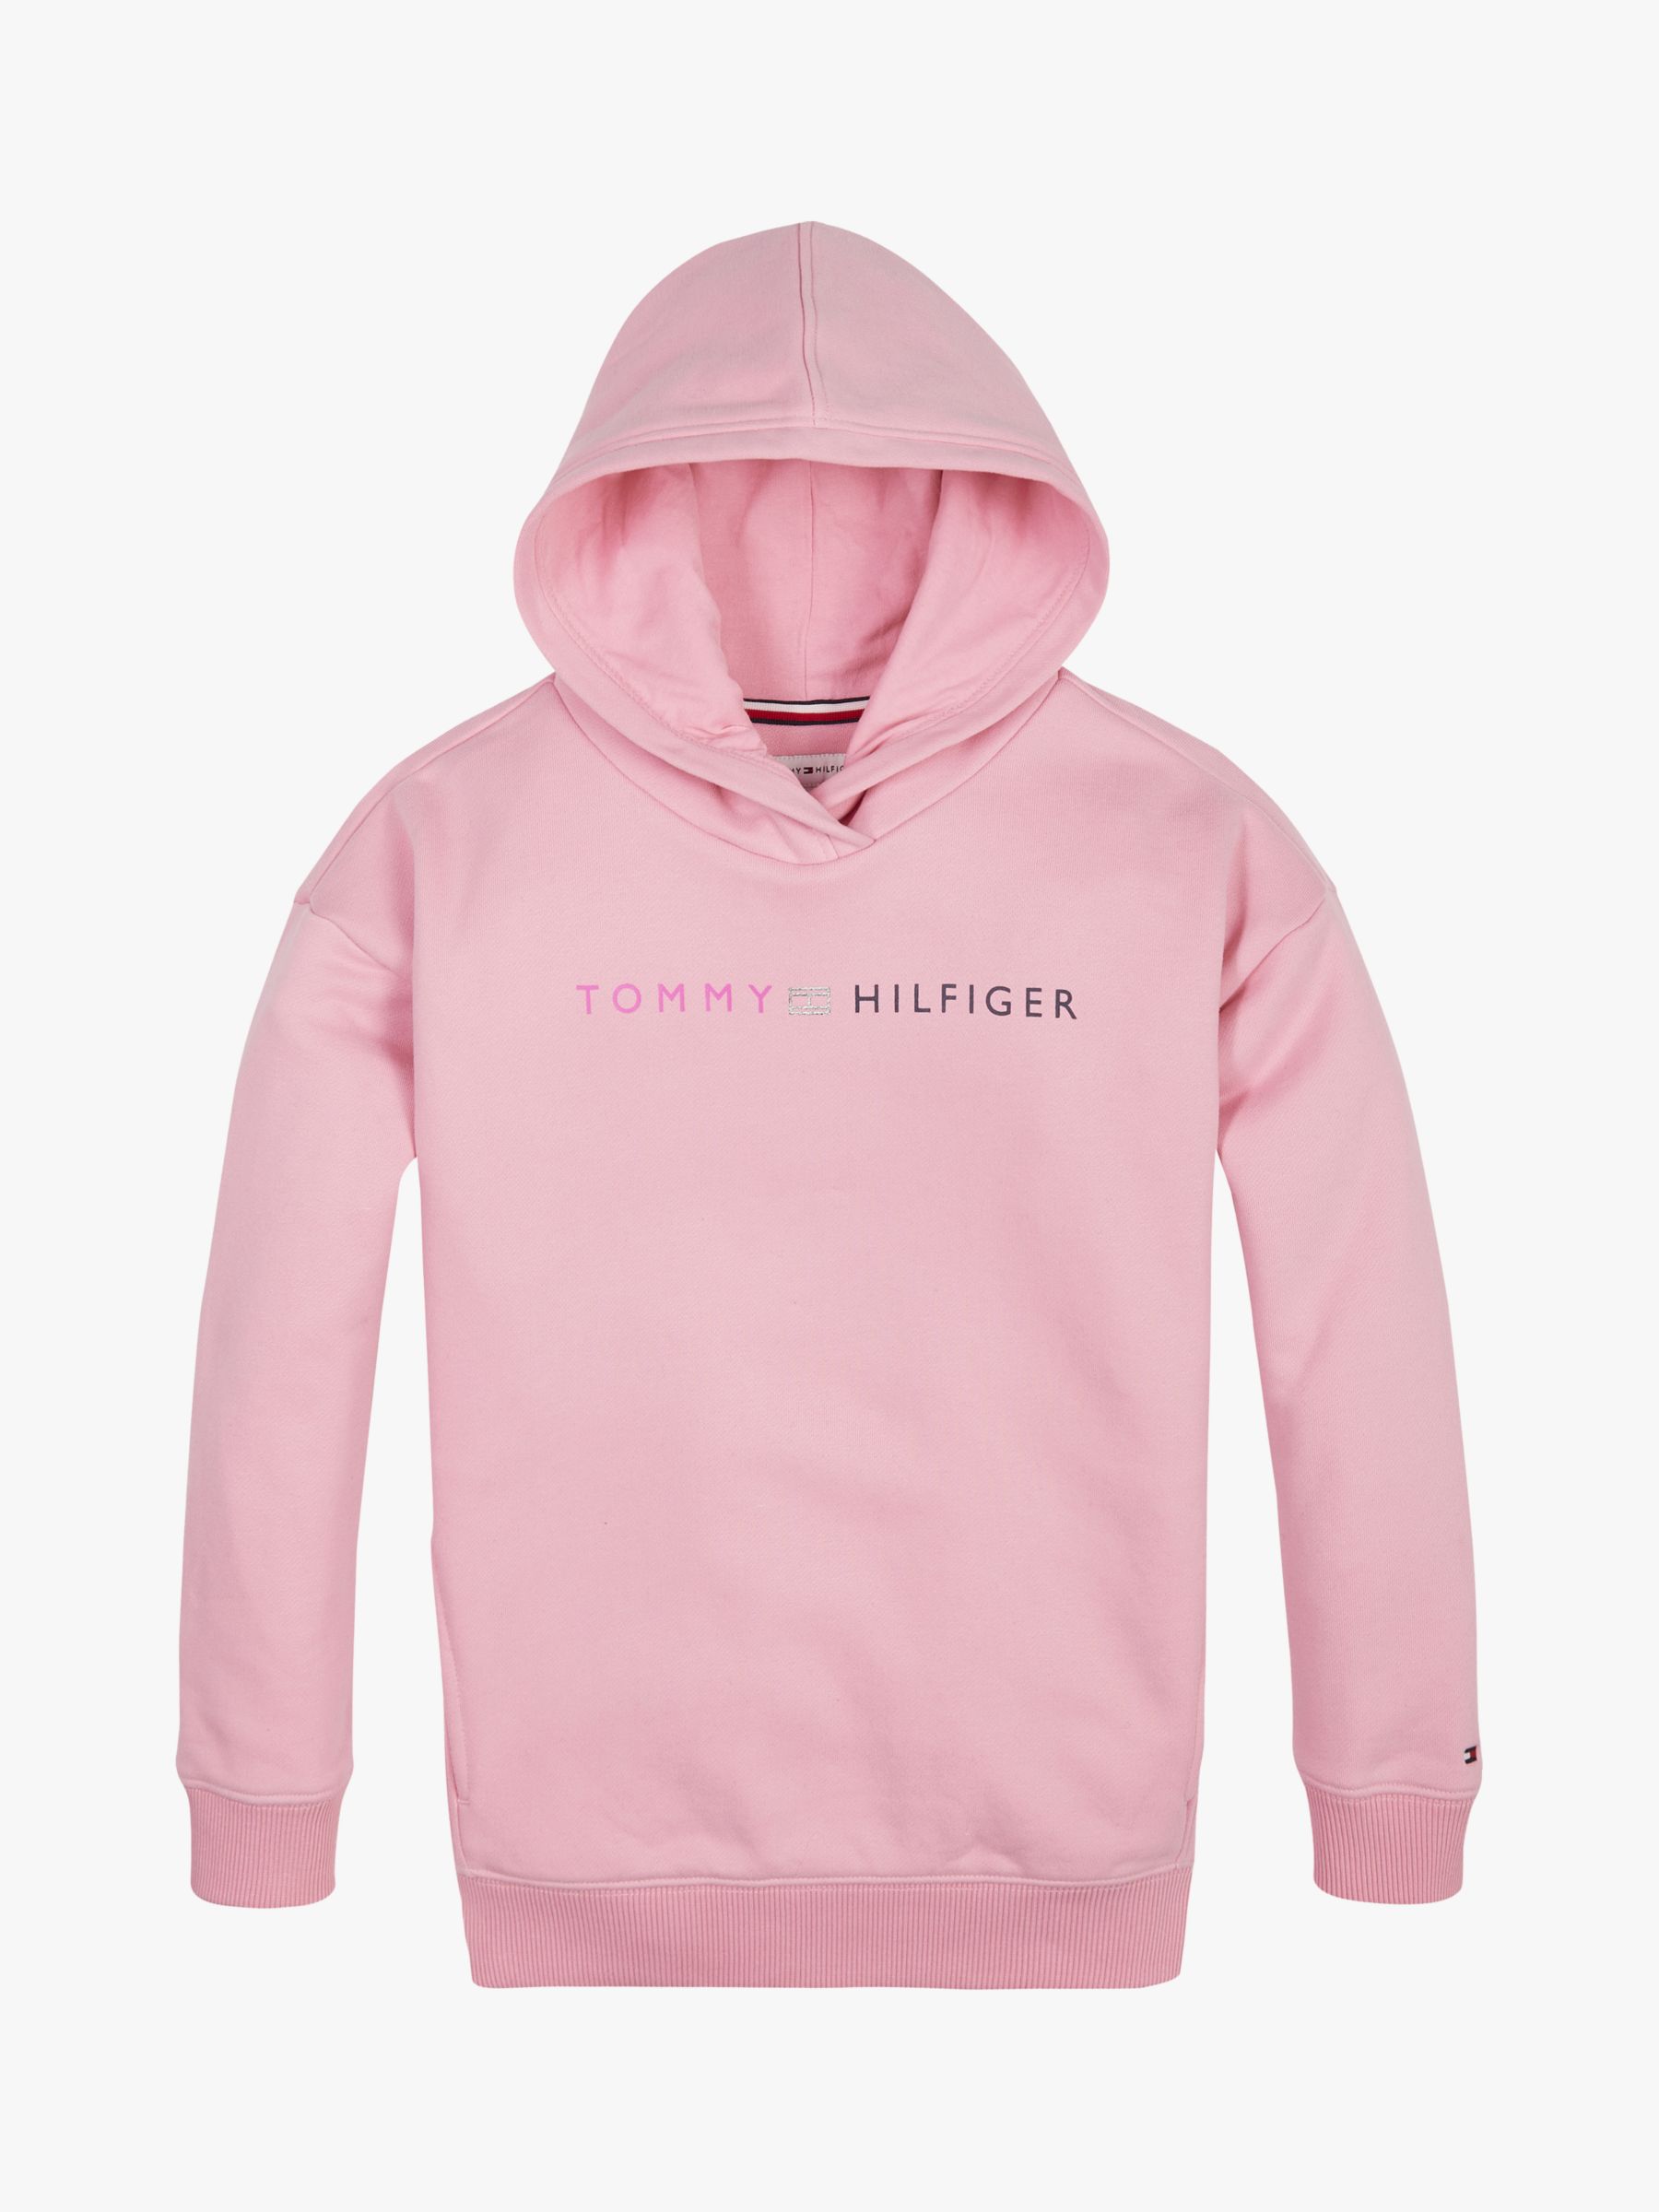 hilfiger hoodie pink